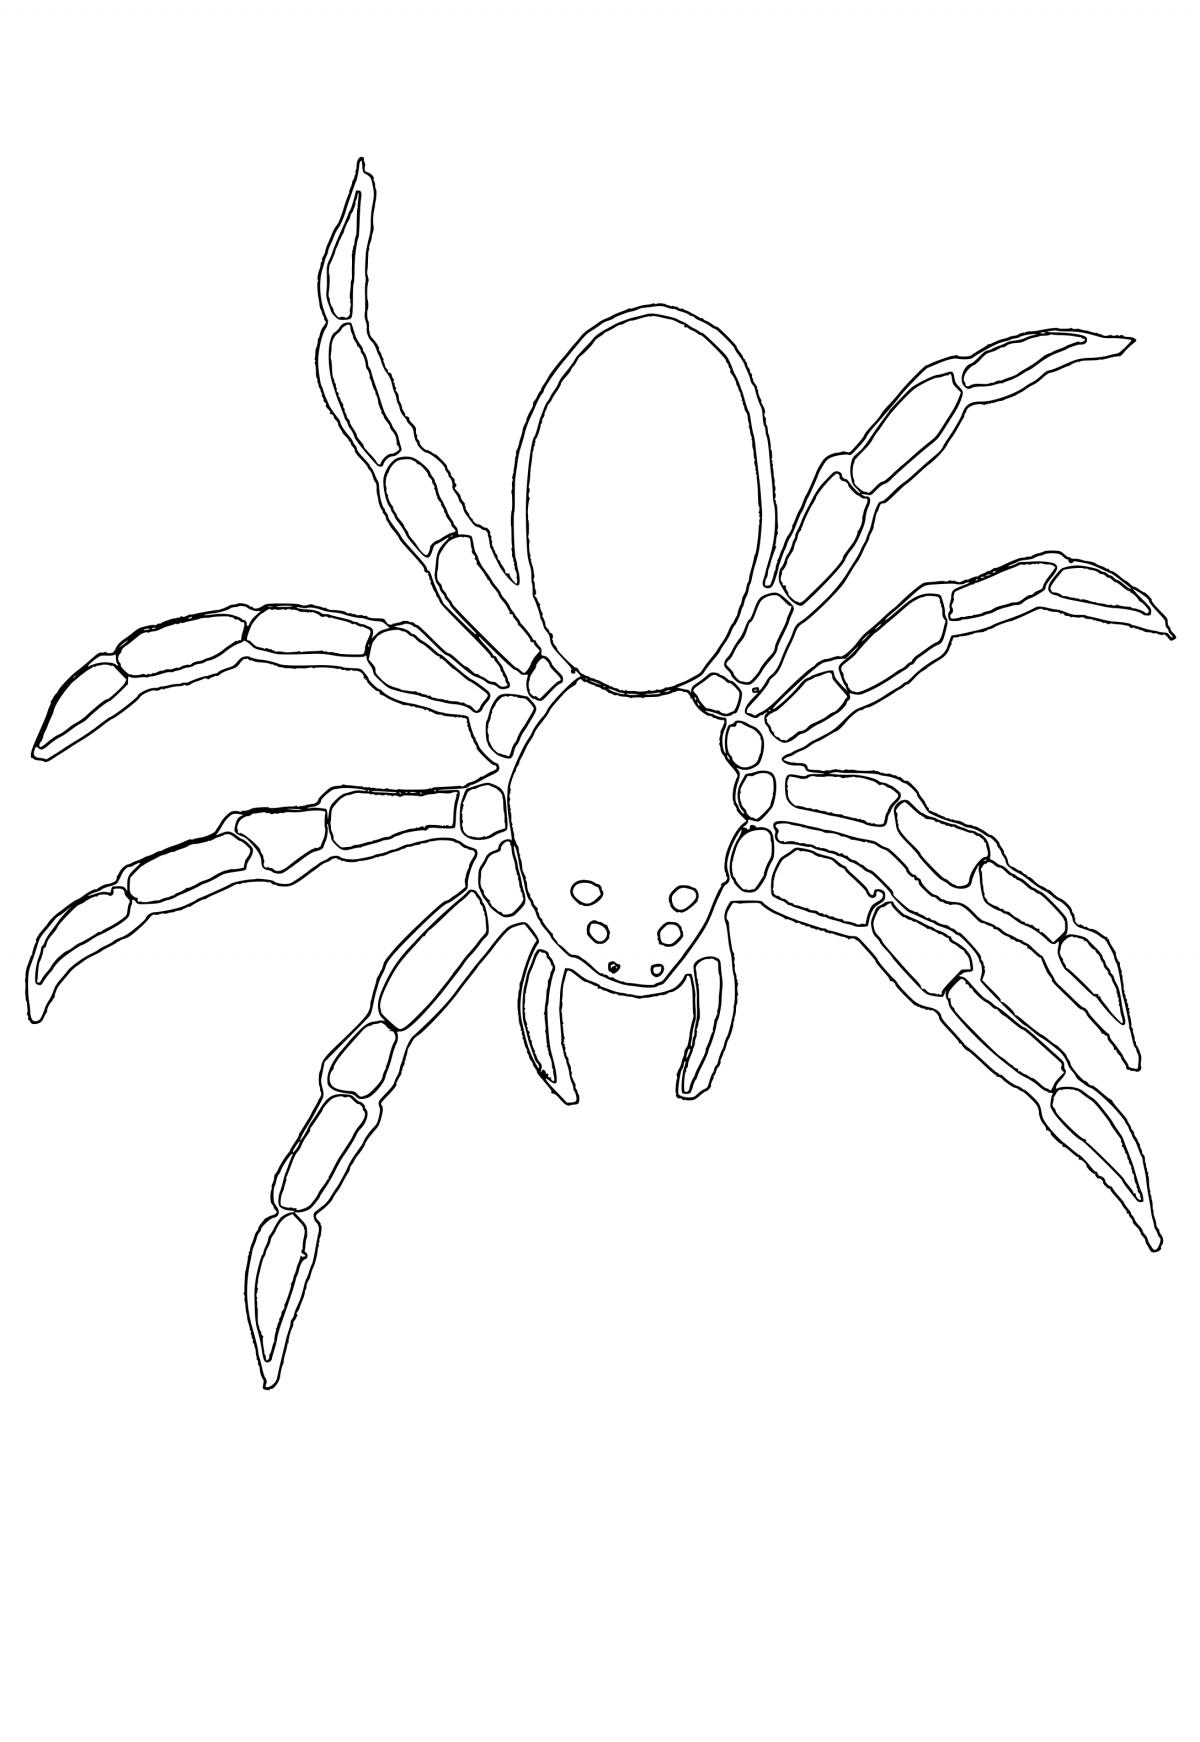 Homem-Aranha através da aranha para colorir - páginas para colorir  gratuitas para impressão